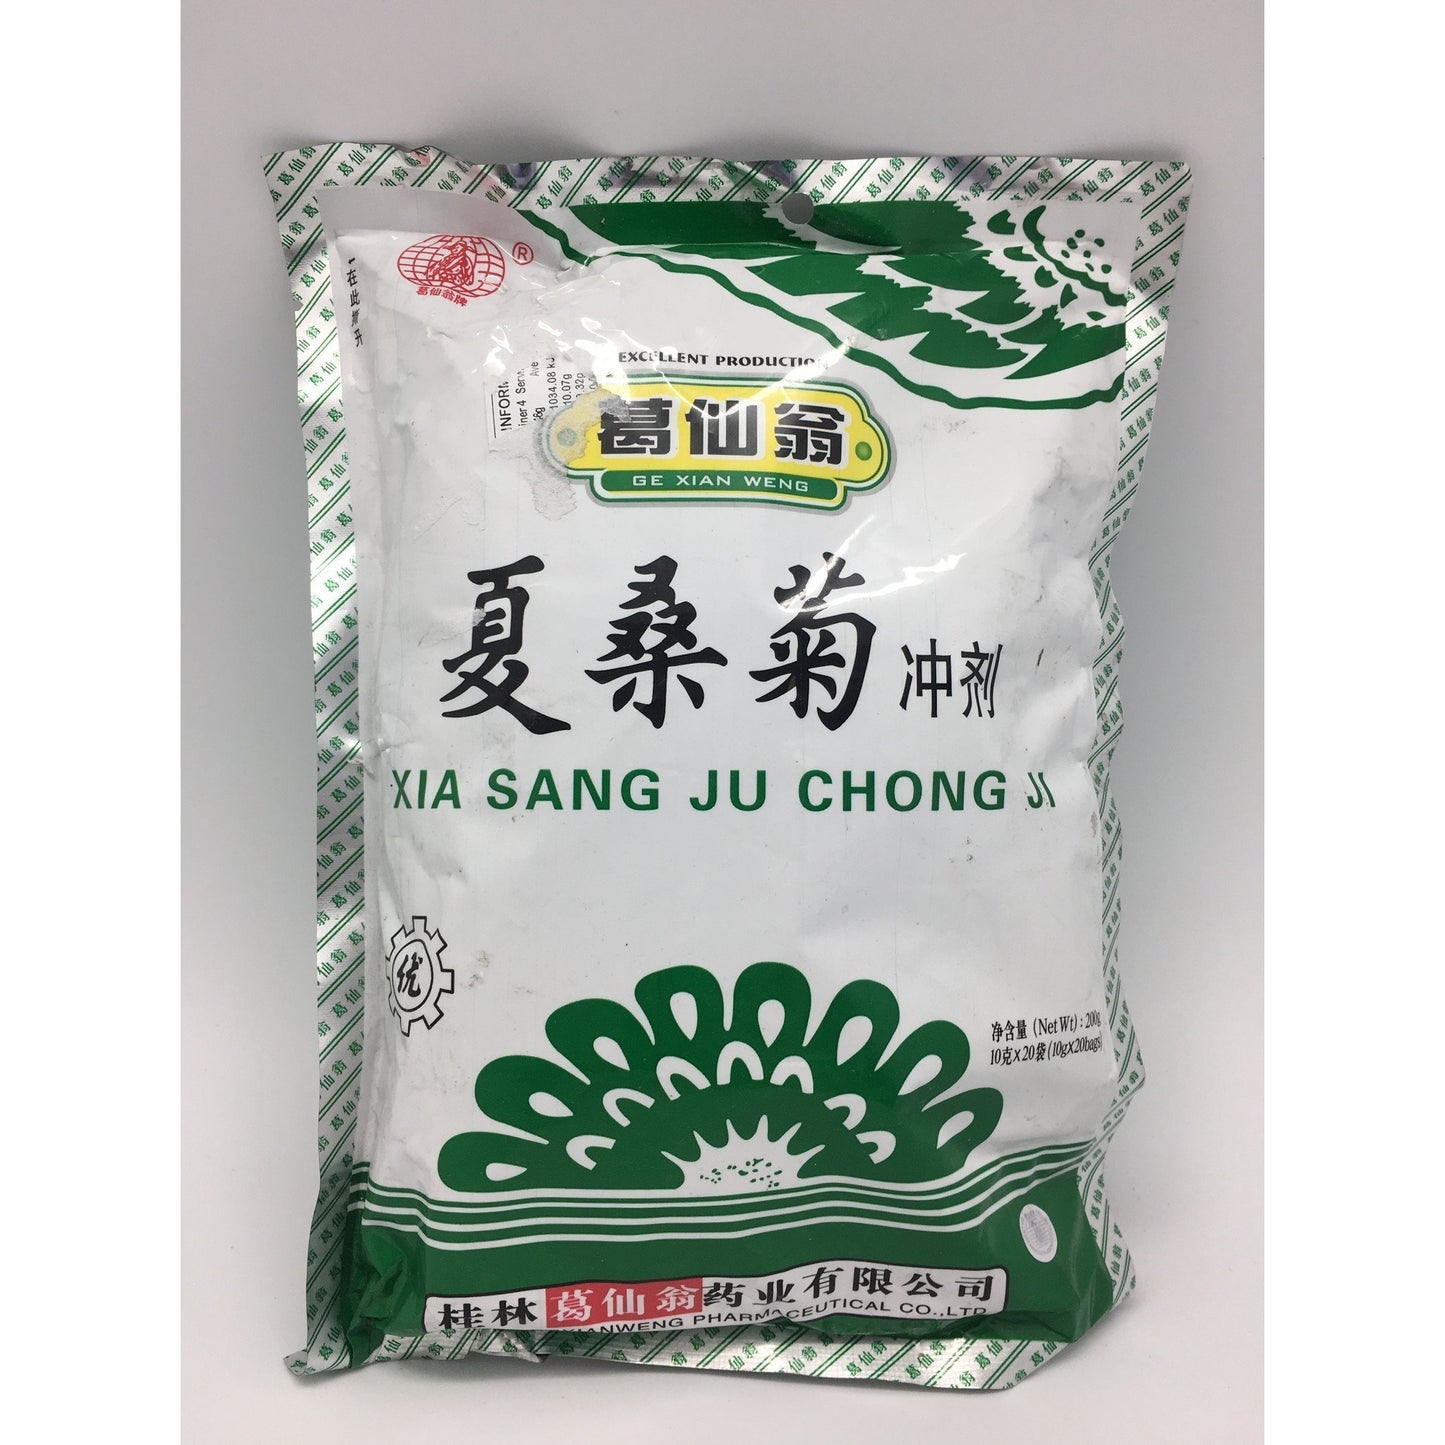 I035X GeXianWeng Brand - Xia Sang Ju Chong Ji 20x10g - 50 bags / 1 CTN - New Eastland Pty Ltd - Asian food wholesalers